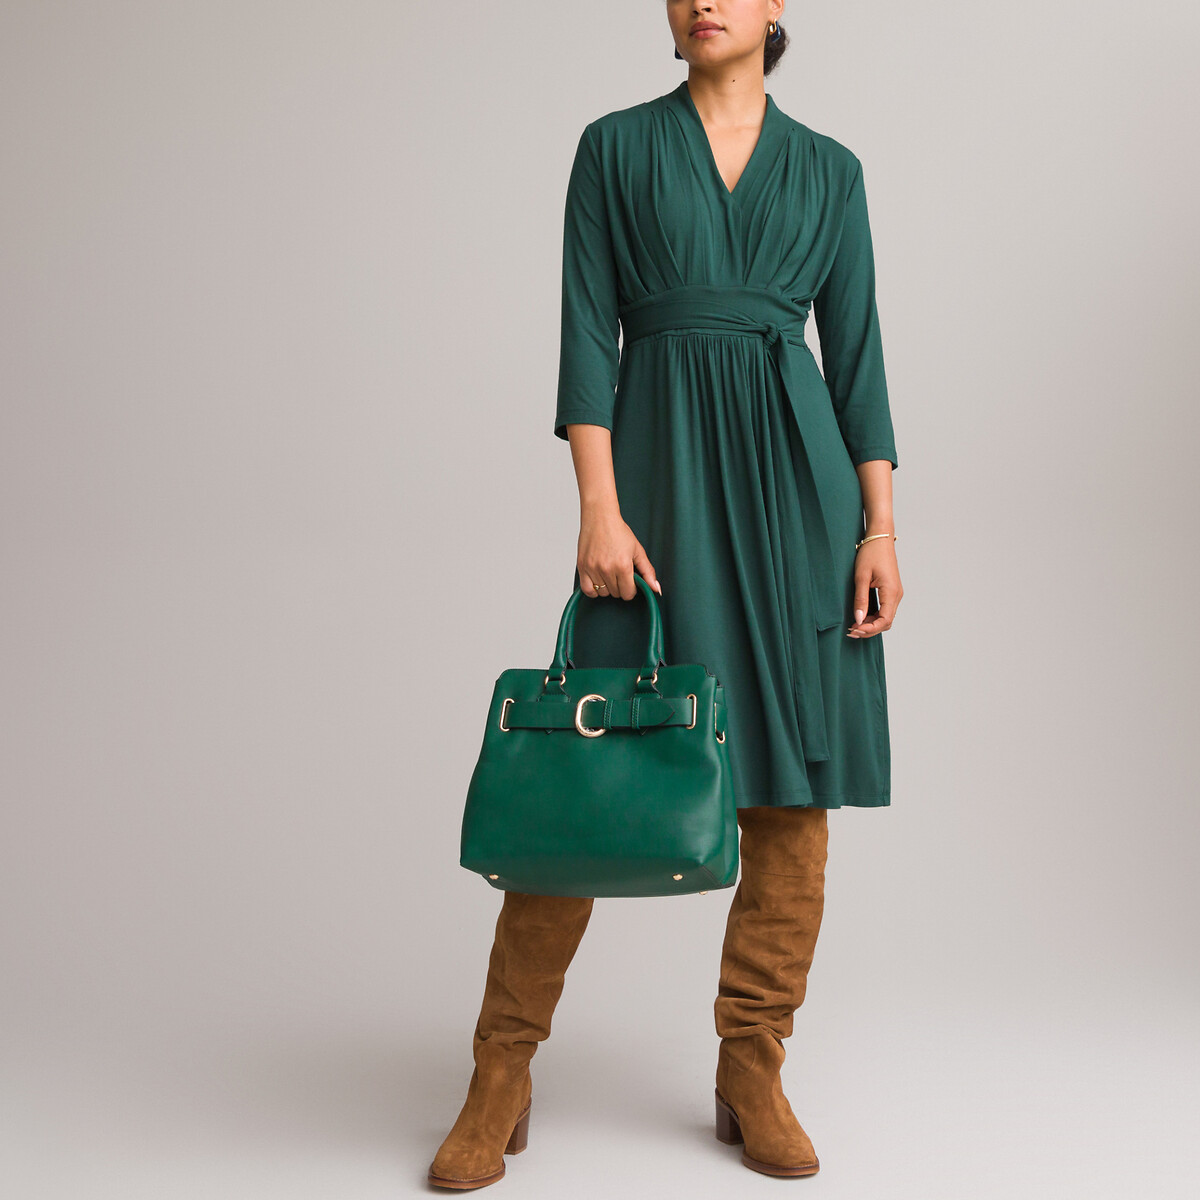 Платье ANNE WEYBURN Платье Расклешенное из струящегося трикотажа с рукавами 34 50 зеленый, размер 50 - фото 1